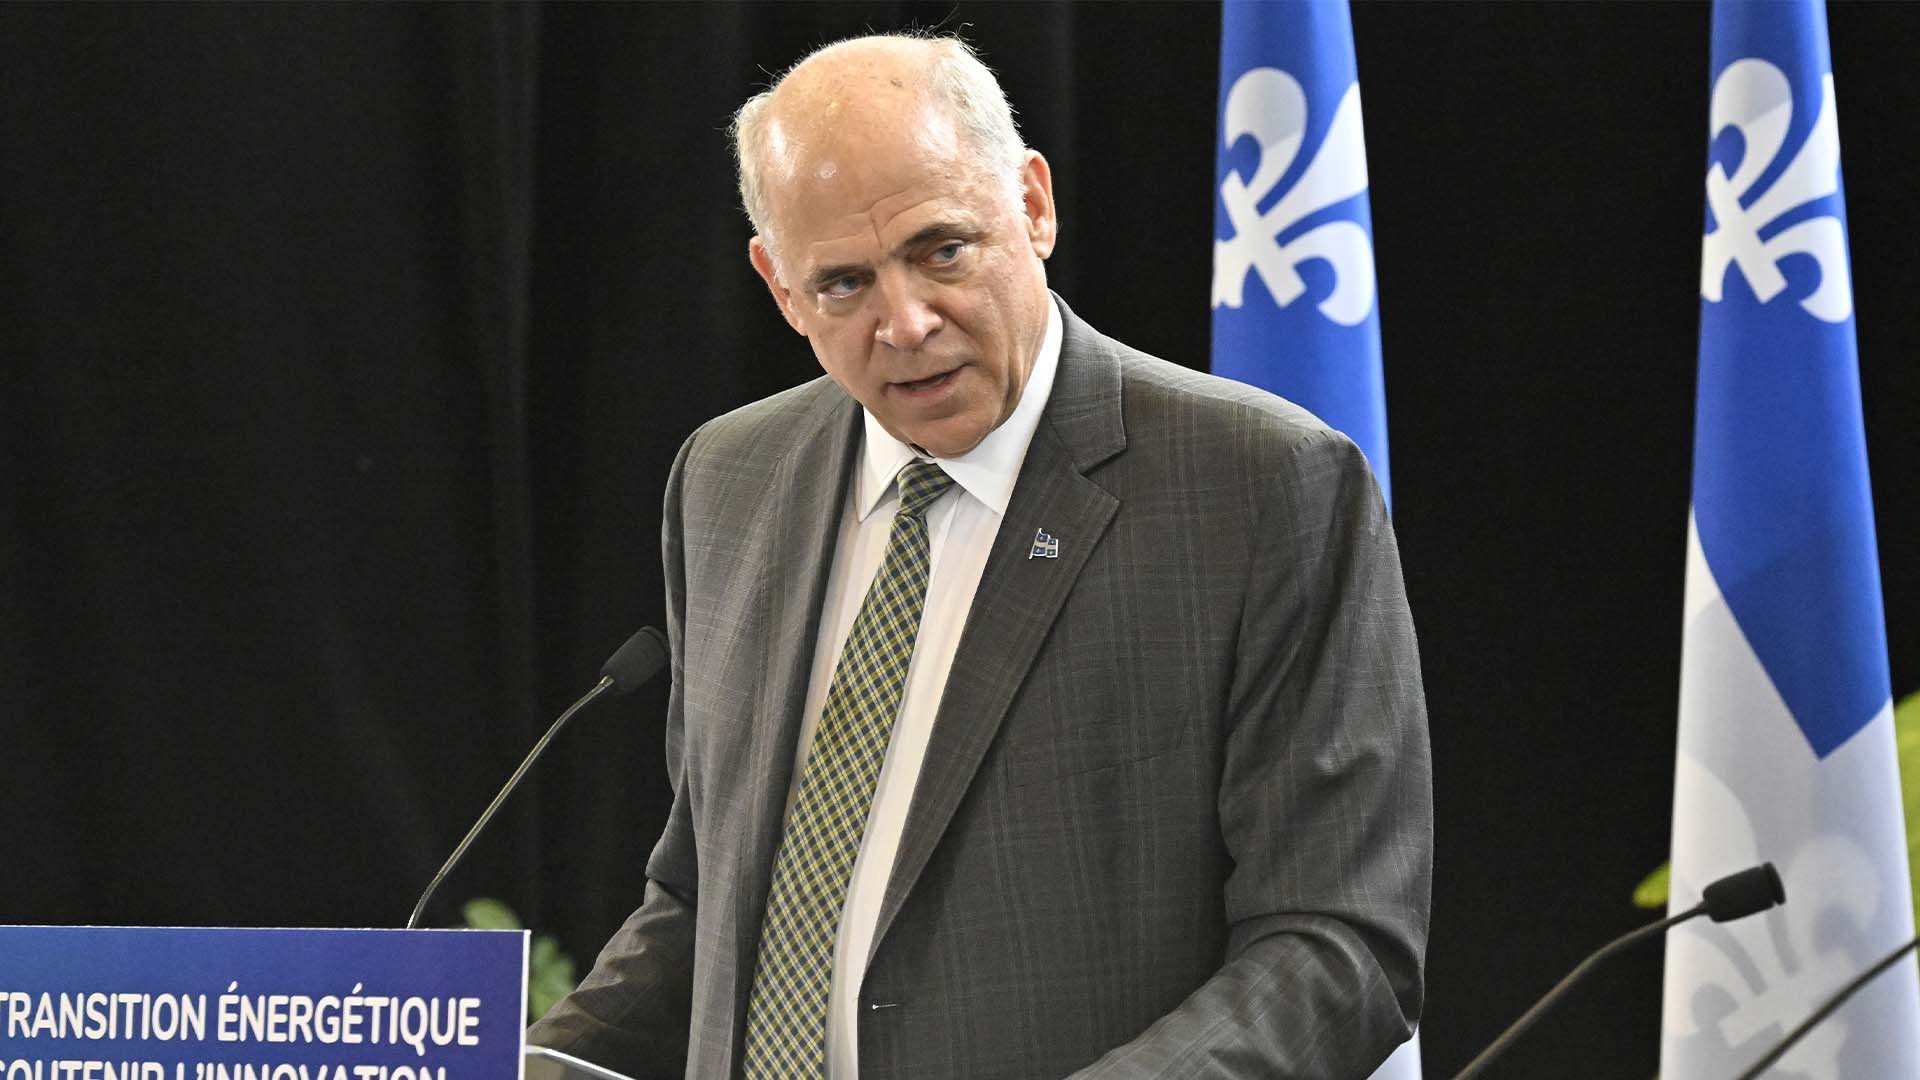 Le ministre de l'Économie et de l'Innovation du Québec, Pierre Fitzgibbon, prend la parole alors que le gouvernement du Québec annonce l'implantation d'un train à hydrogène vert dans la région de Charlevoix, le jeudi 2 février 2023 à Québec.